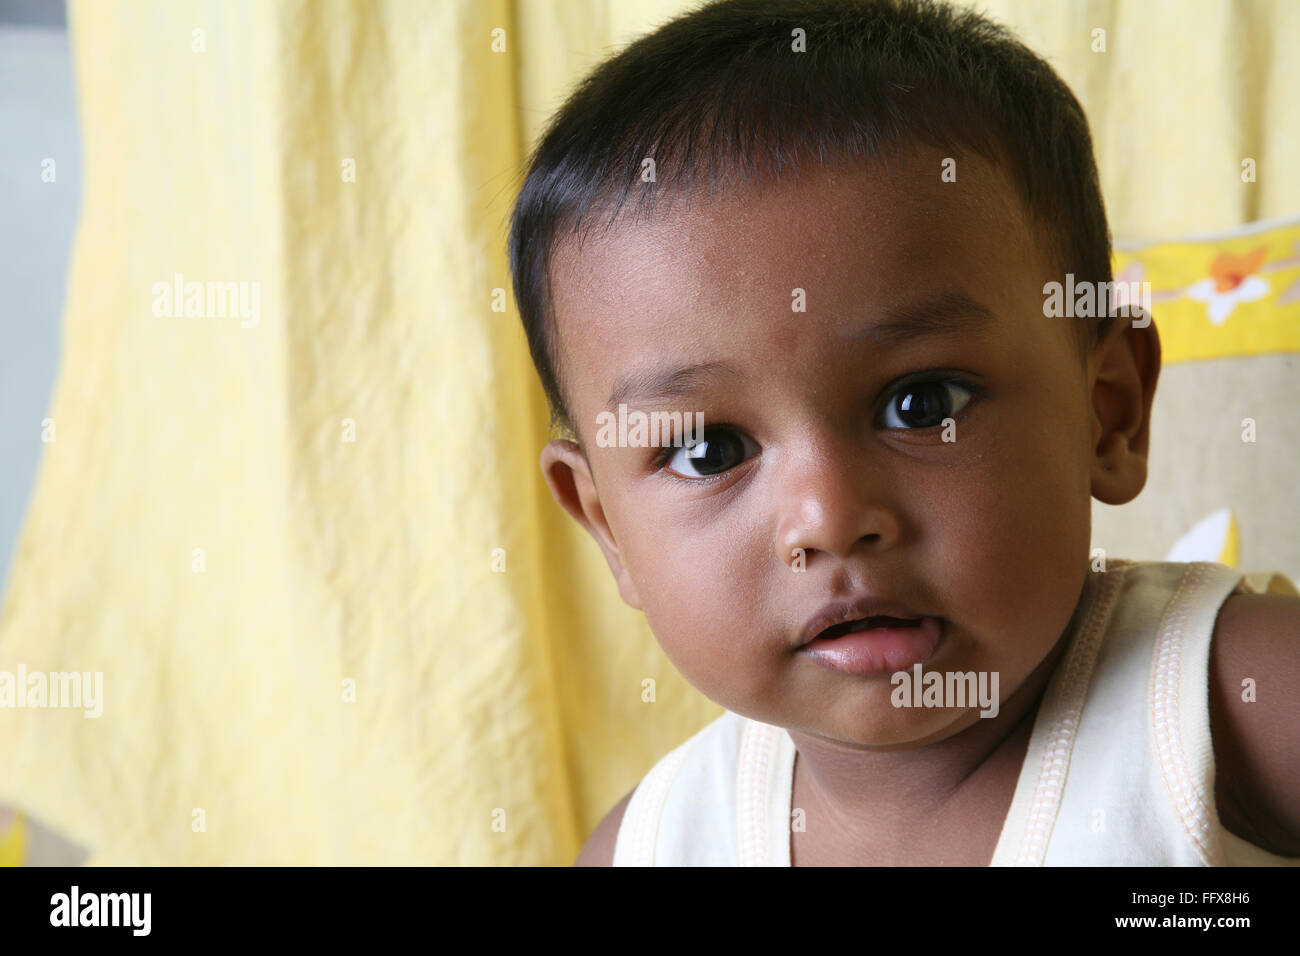 South Asian kleine Indianerjunge von 1 Jahr Blick in die Kamera Herr #642 Stockfoto